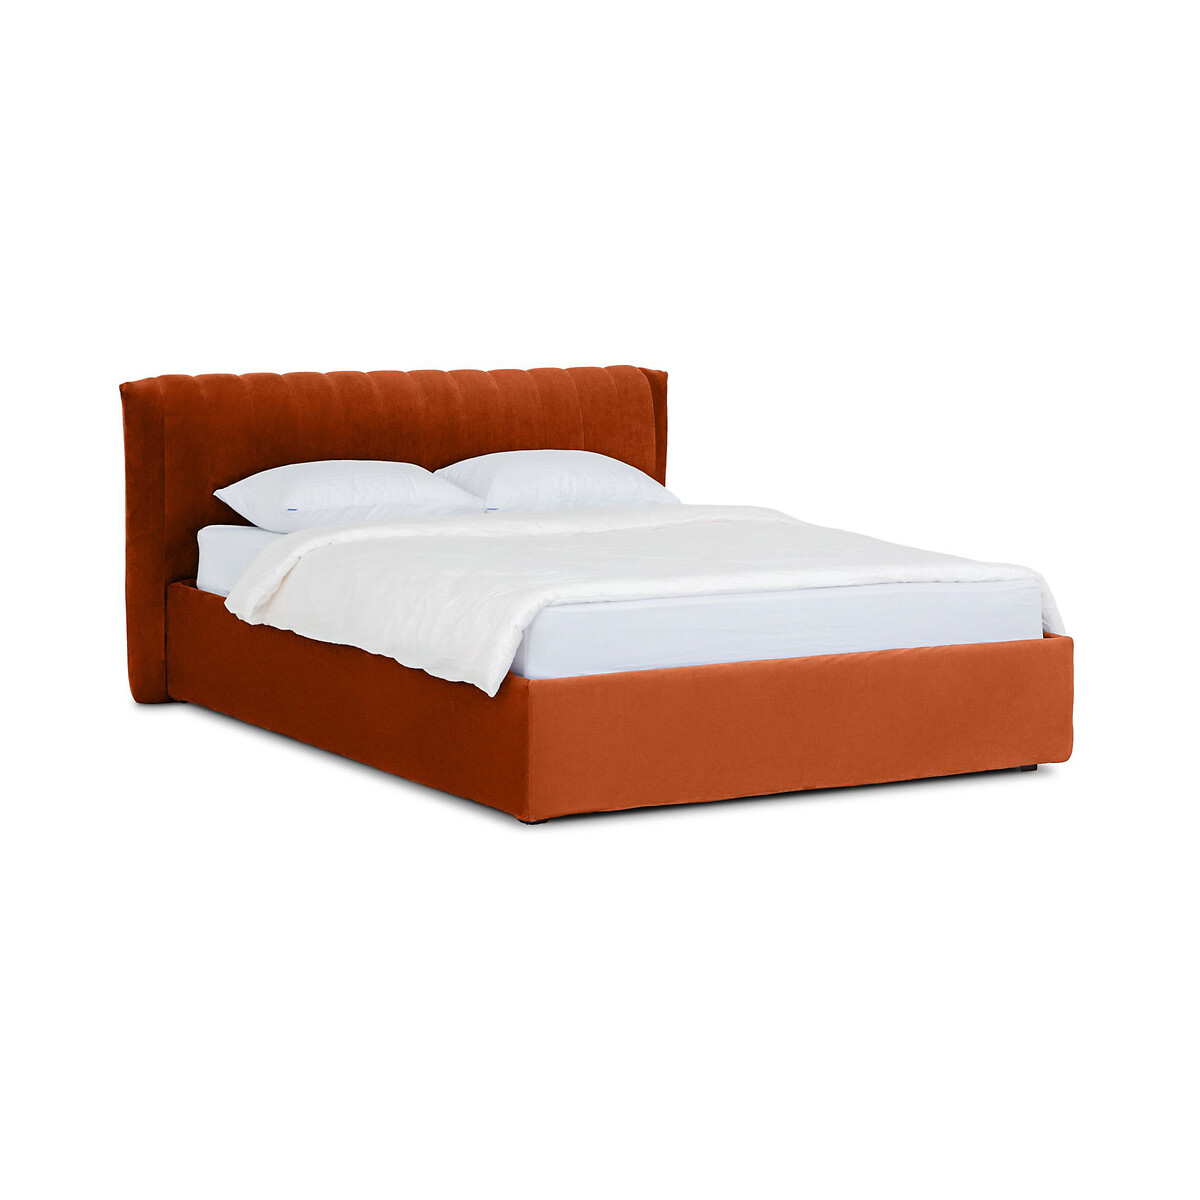 Кровать Queen Anastasia Lux 160 x 200 см оранжевый LaRedoute, размер 160 x 200 см - фото 1